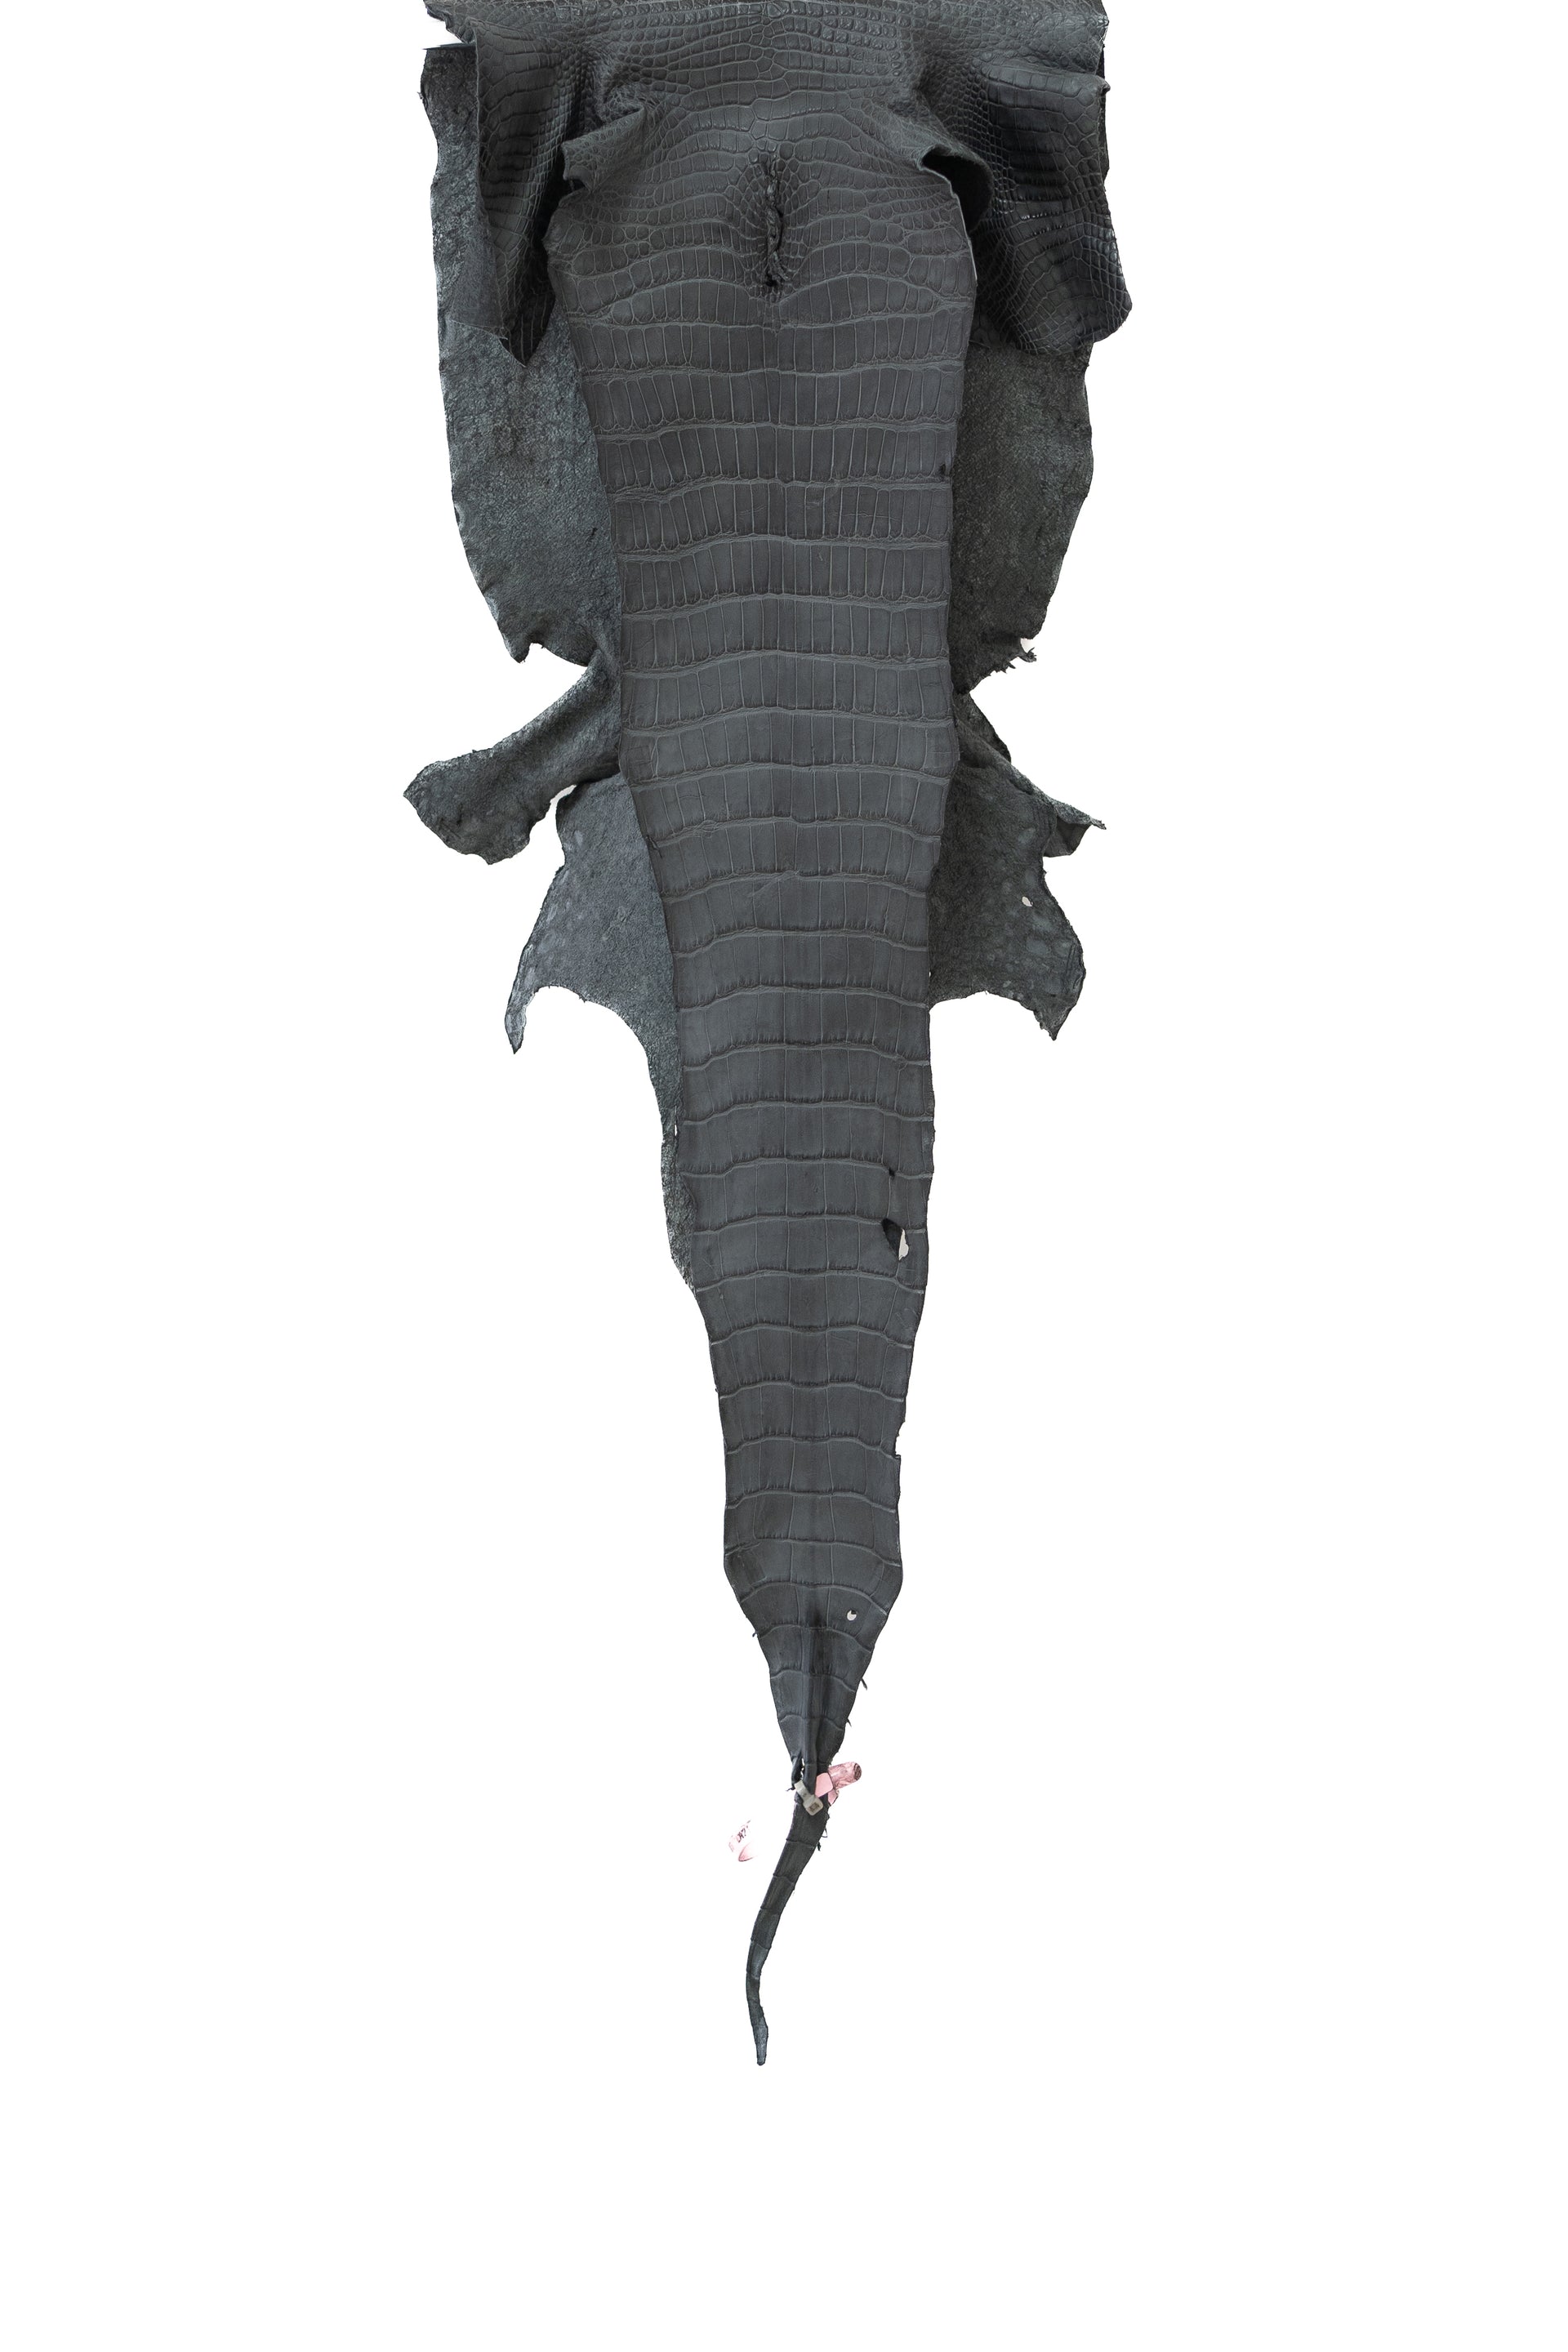 33 cm Grade 2/3 Serpentine Matte Wild American Alligator Leather - Tag: LA21-0101481